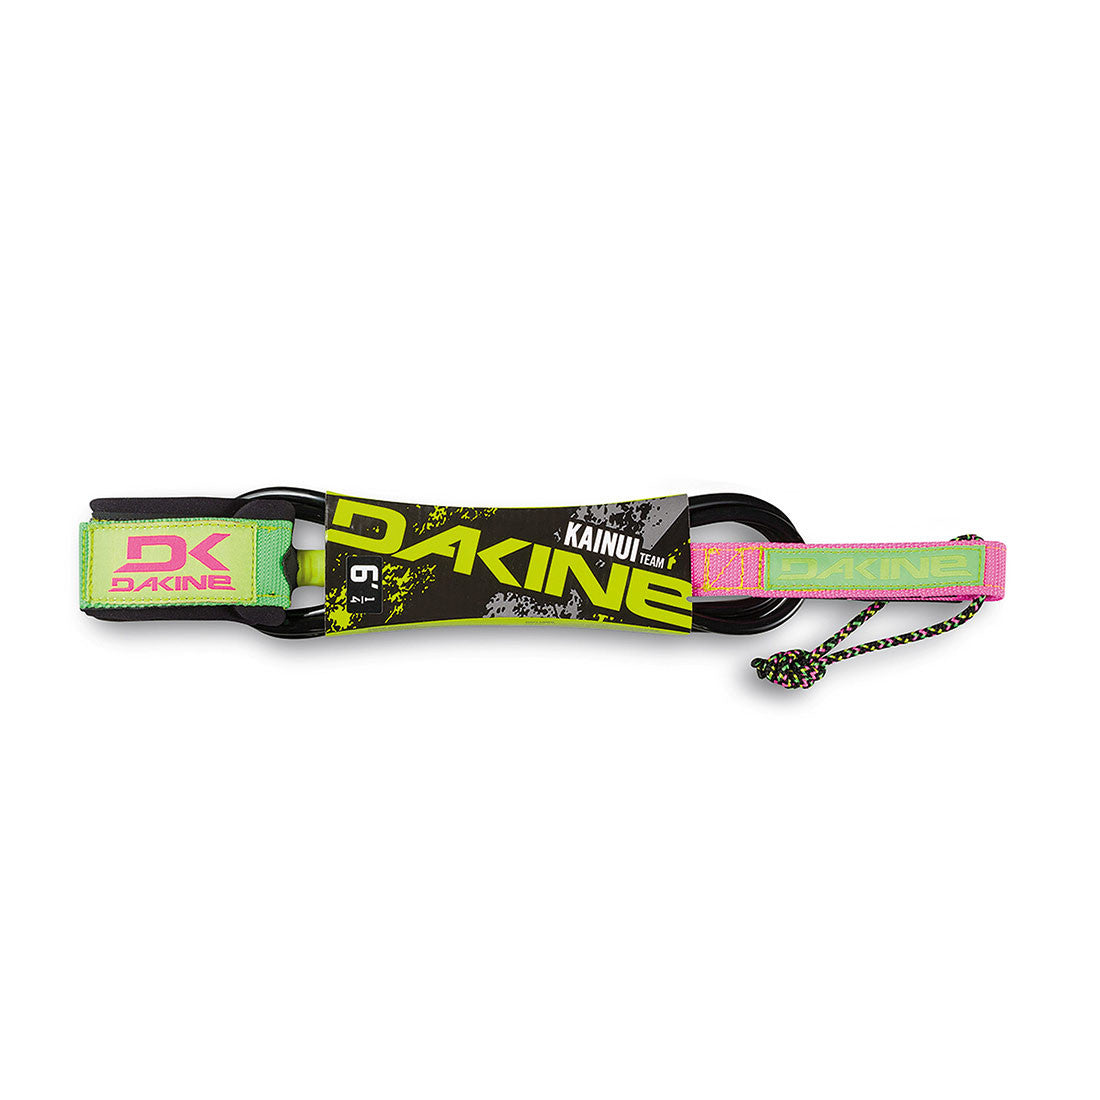 Dakine Kainui Team 6' x 1/4" Surfboard Leash (Lime/Pink)